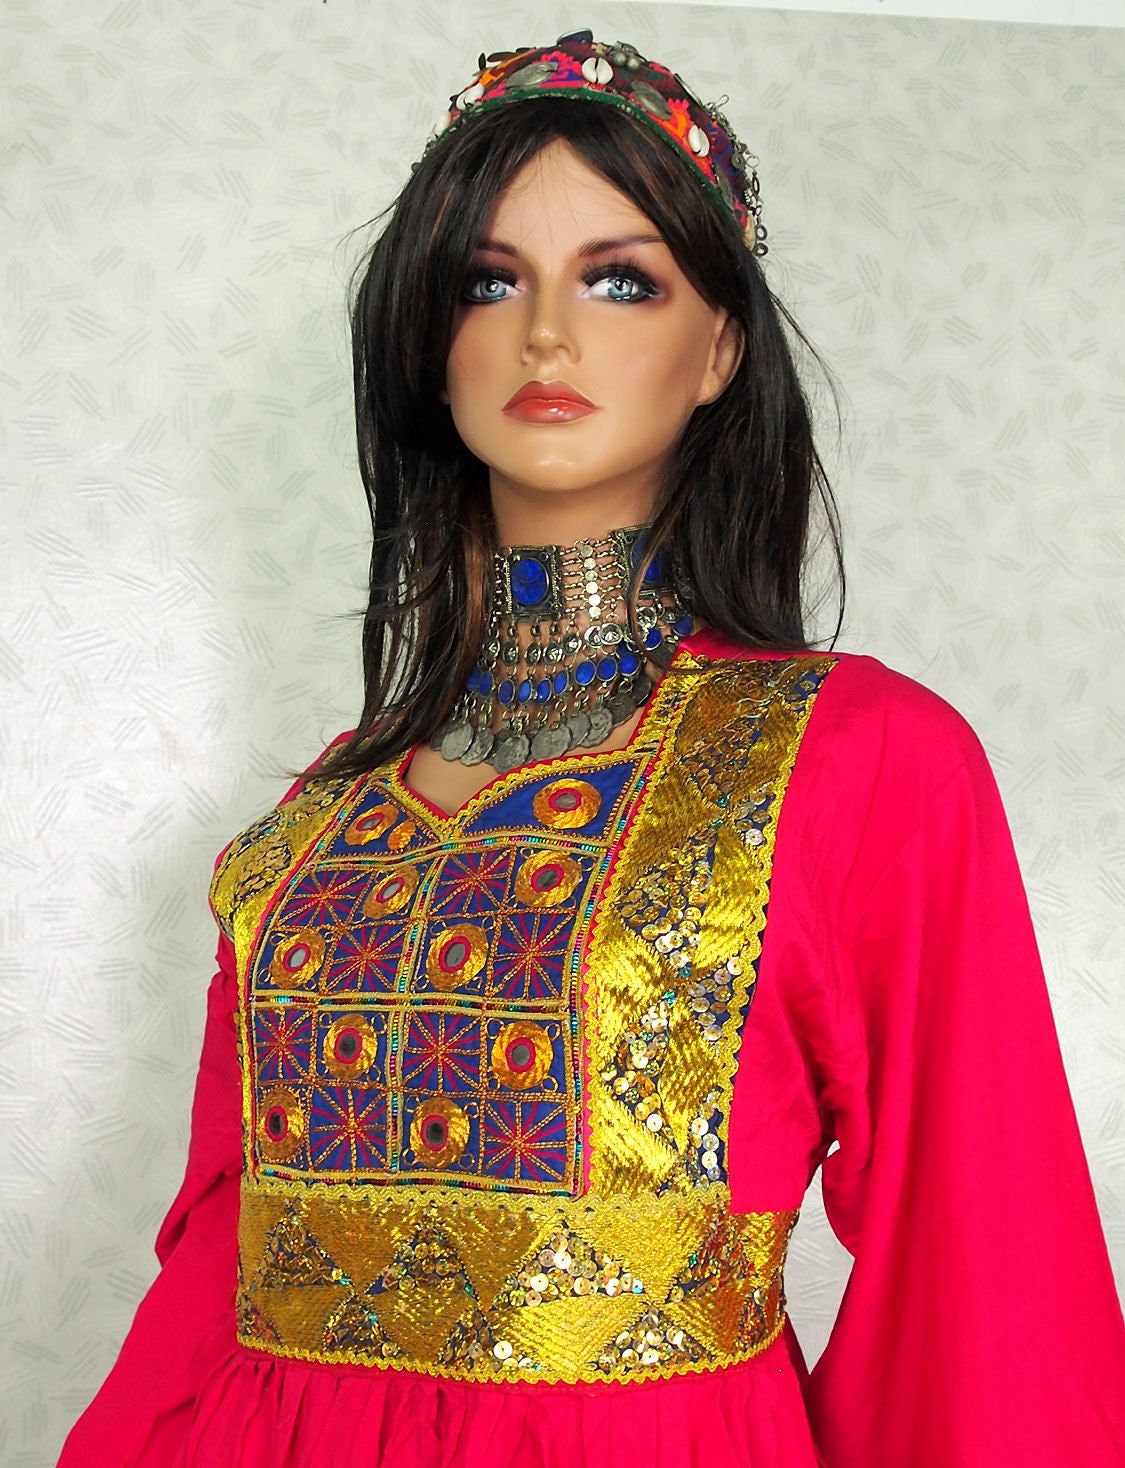 Orient Nomaden kuchi frauen Tracht afghan kleid afghanistan hand bestickte kostüm 6 Farben  Orientsbazar   